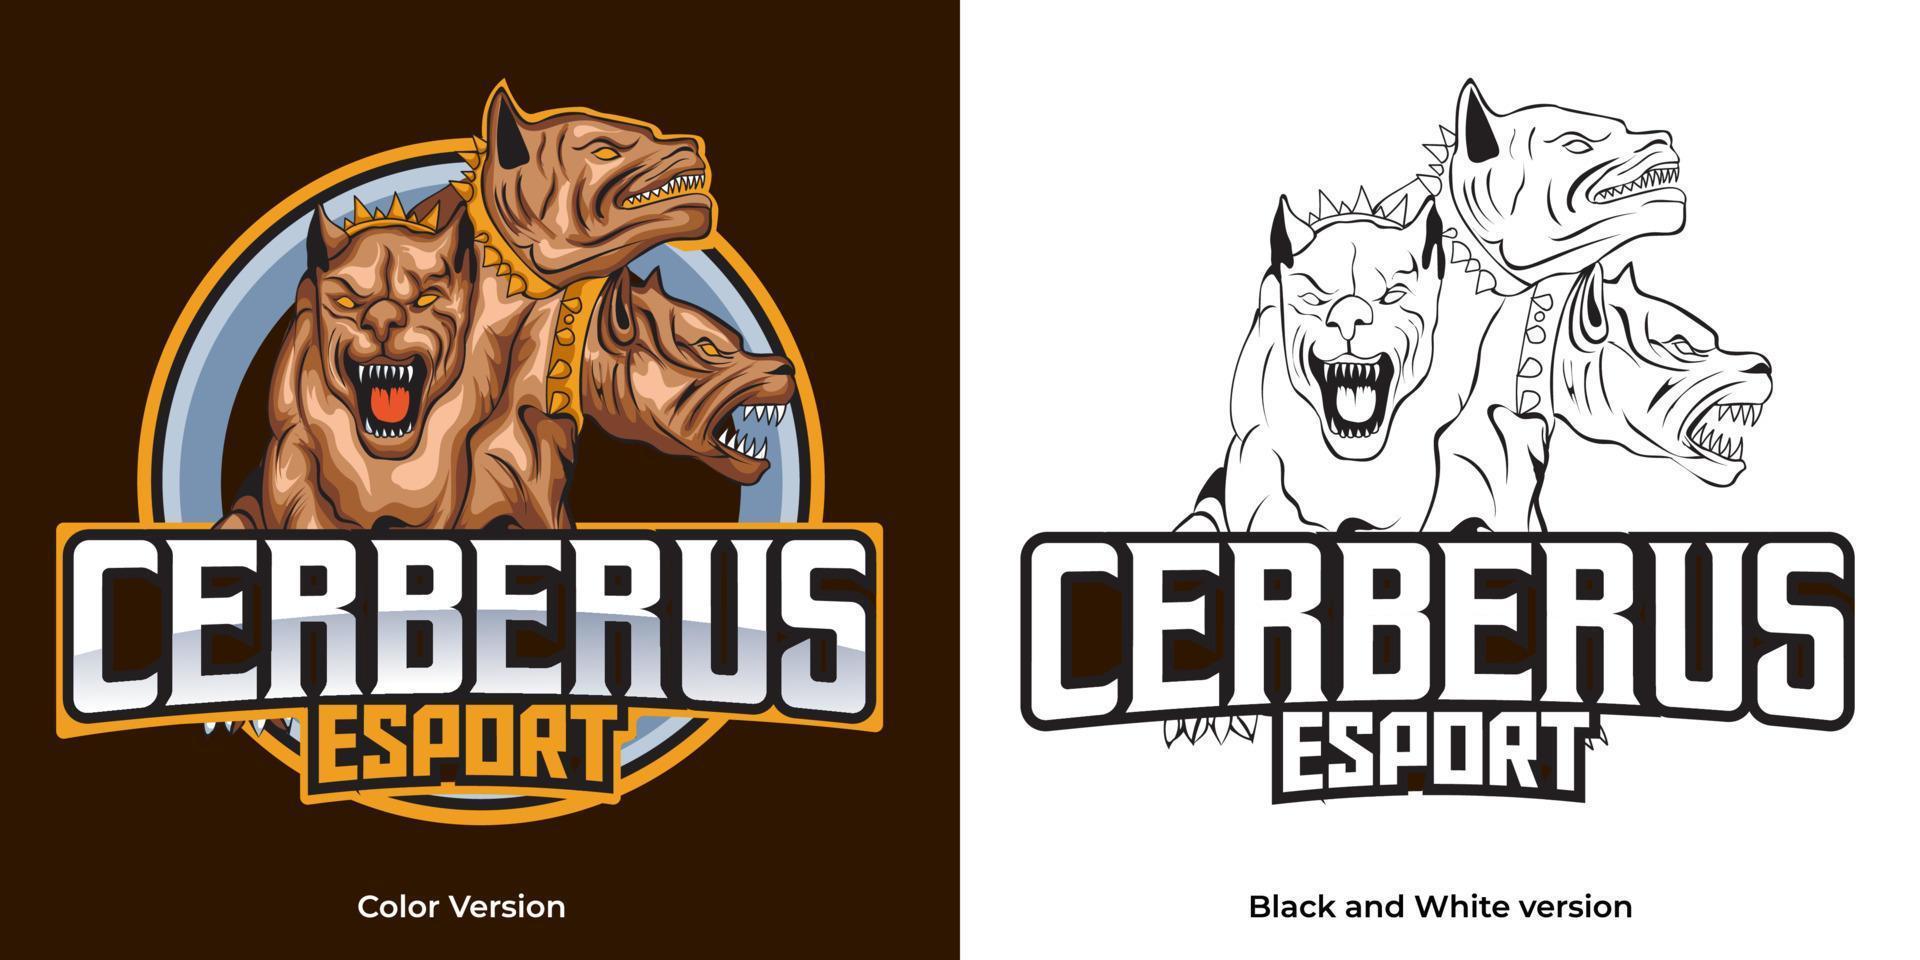 création de mascotte de logo esport cerberus vecteur